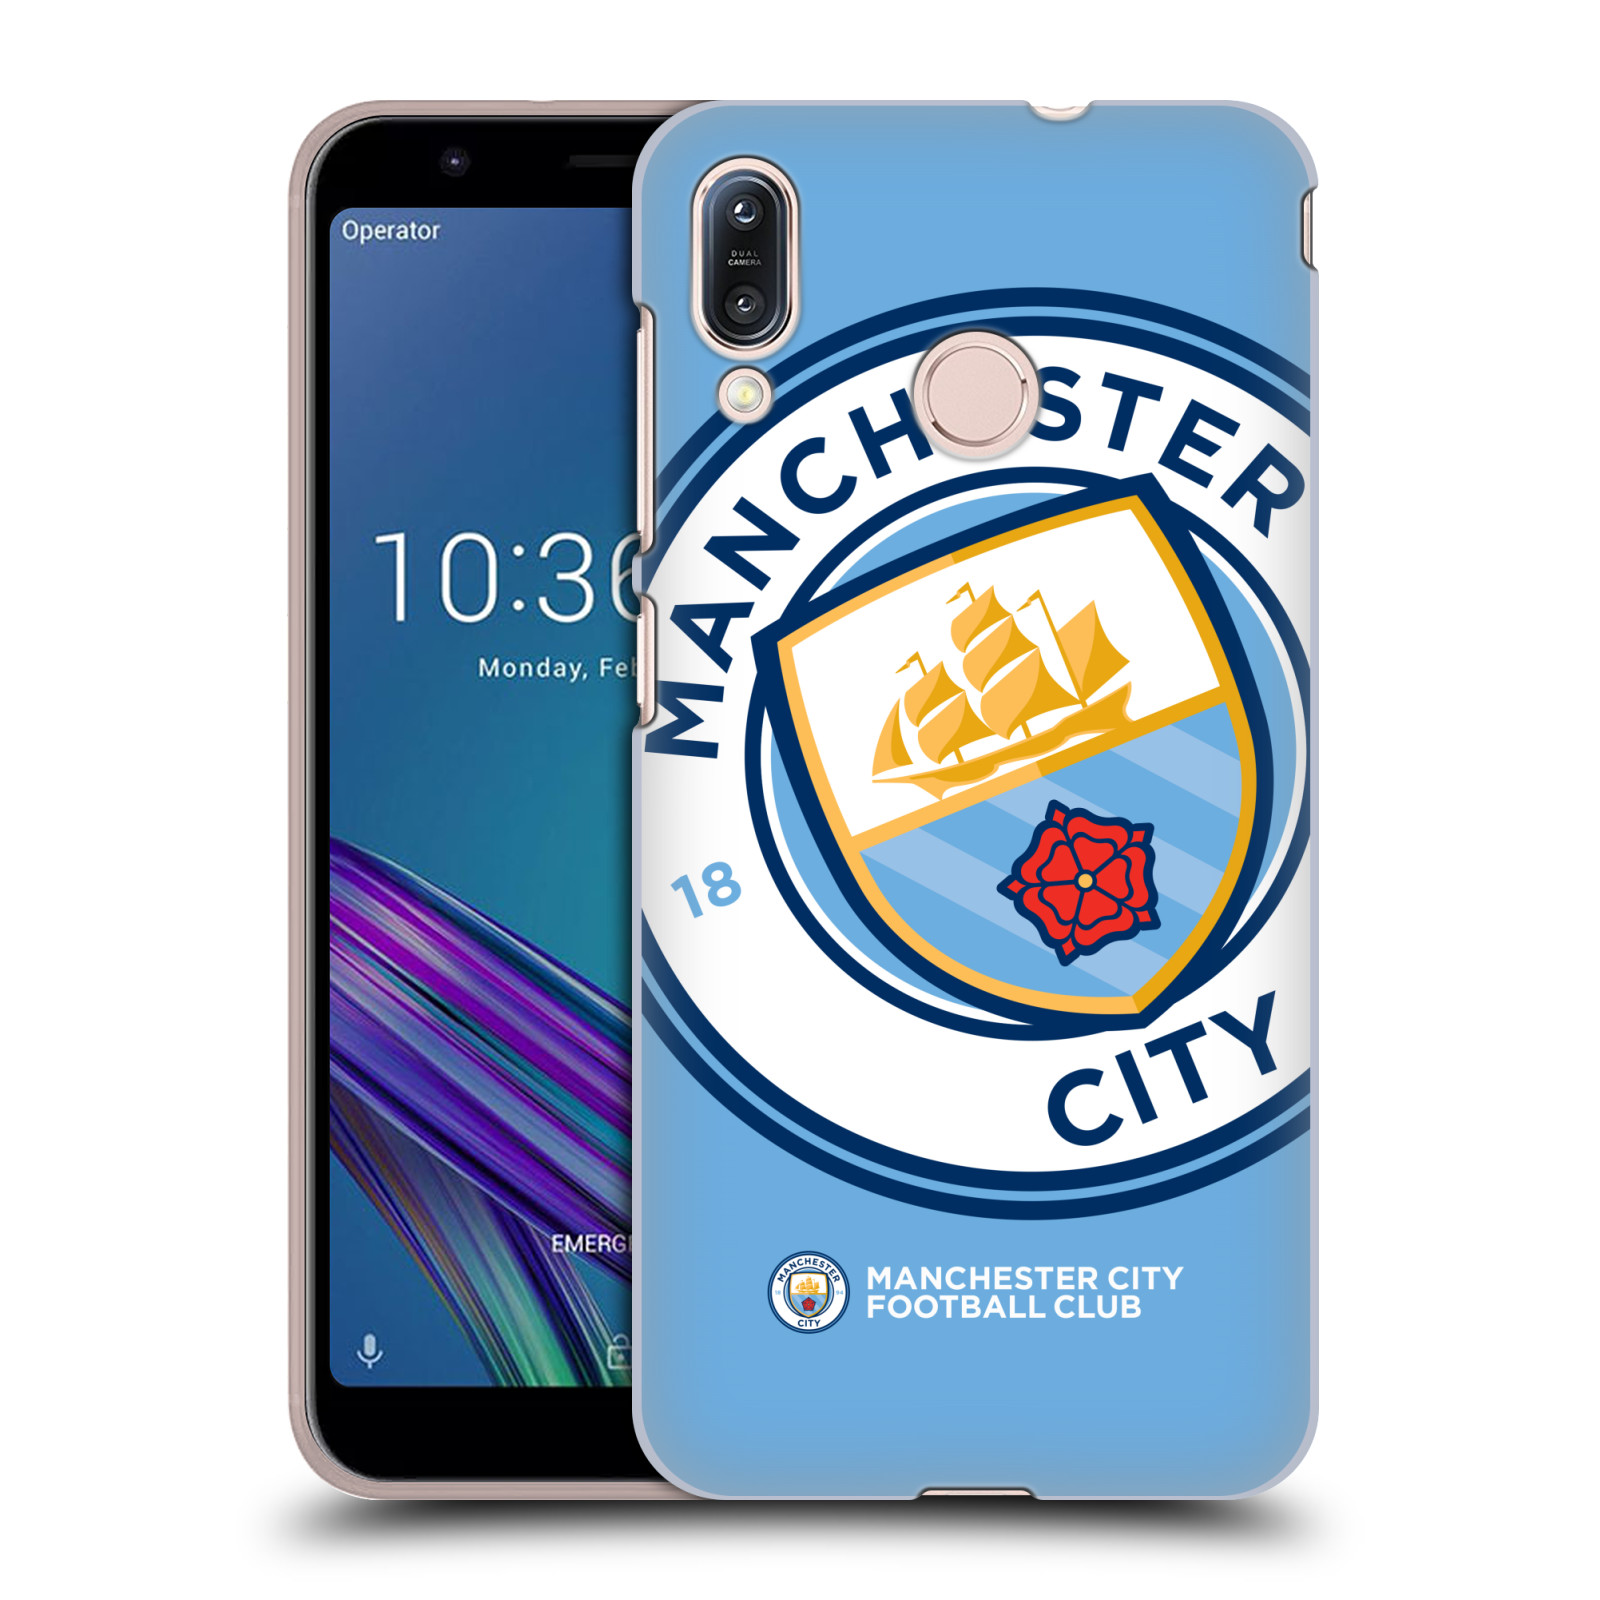 Pouzdro na mobil Asus Zenfone Max M1 (ZB555KL) - HEAD CASE - Fotbalový klub Manchester City modrý velký přesahující znak